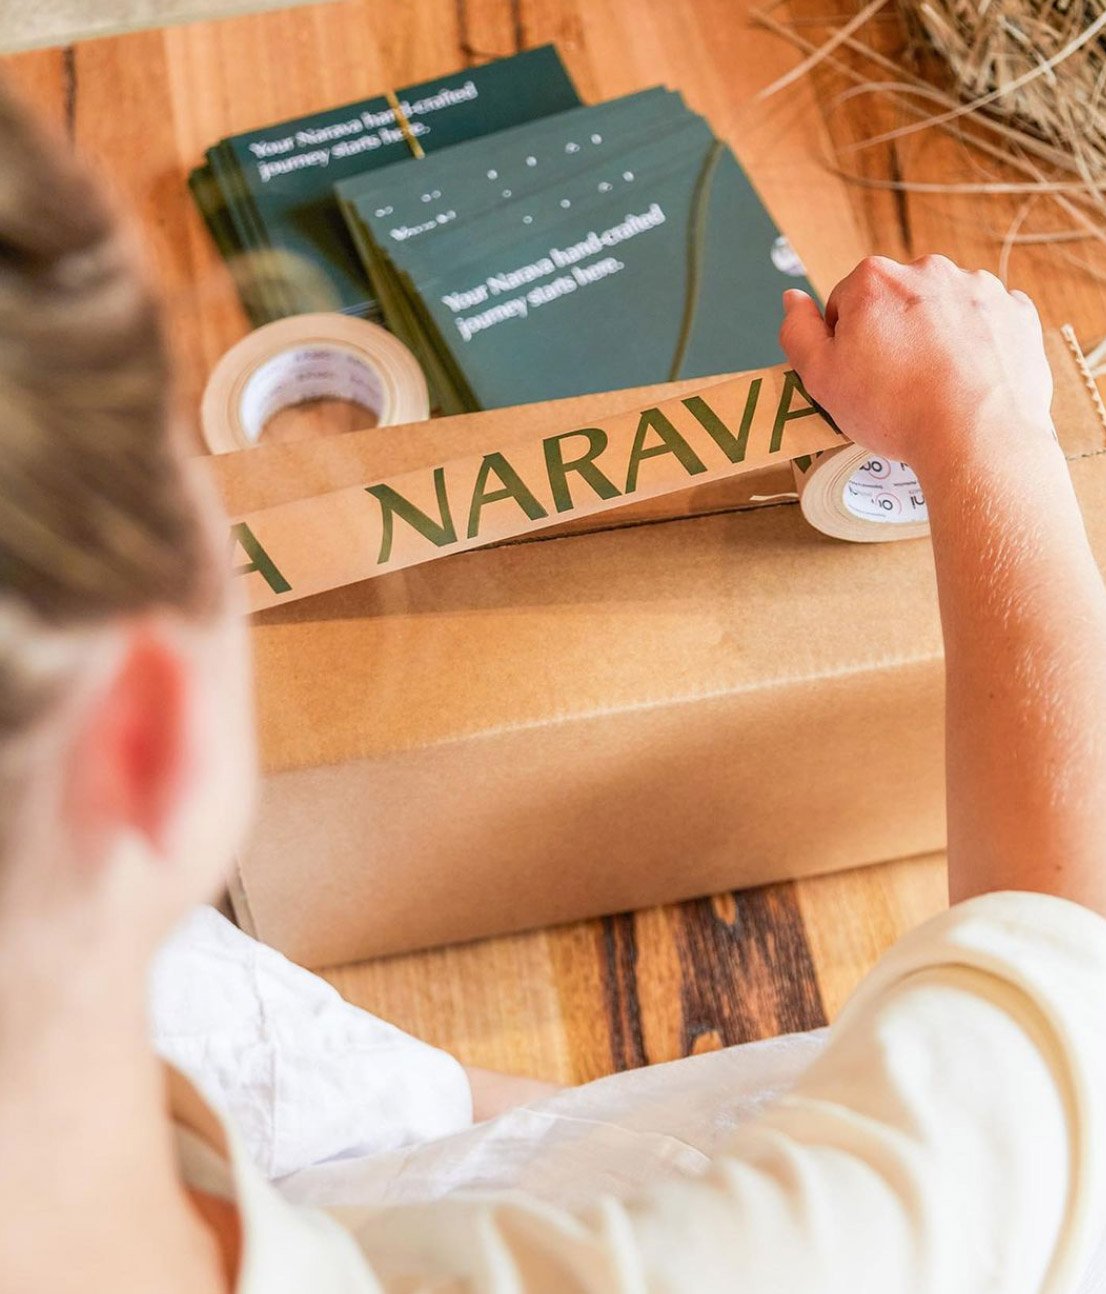 Narava branded custom packaging tape